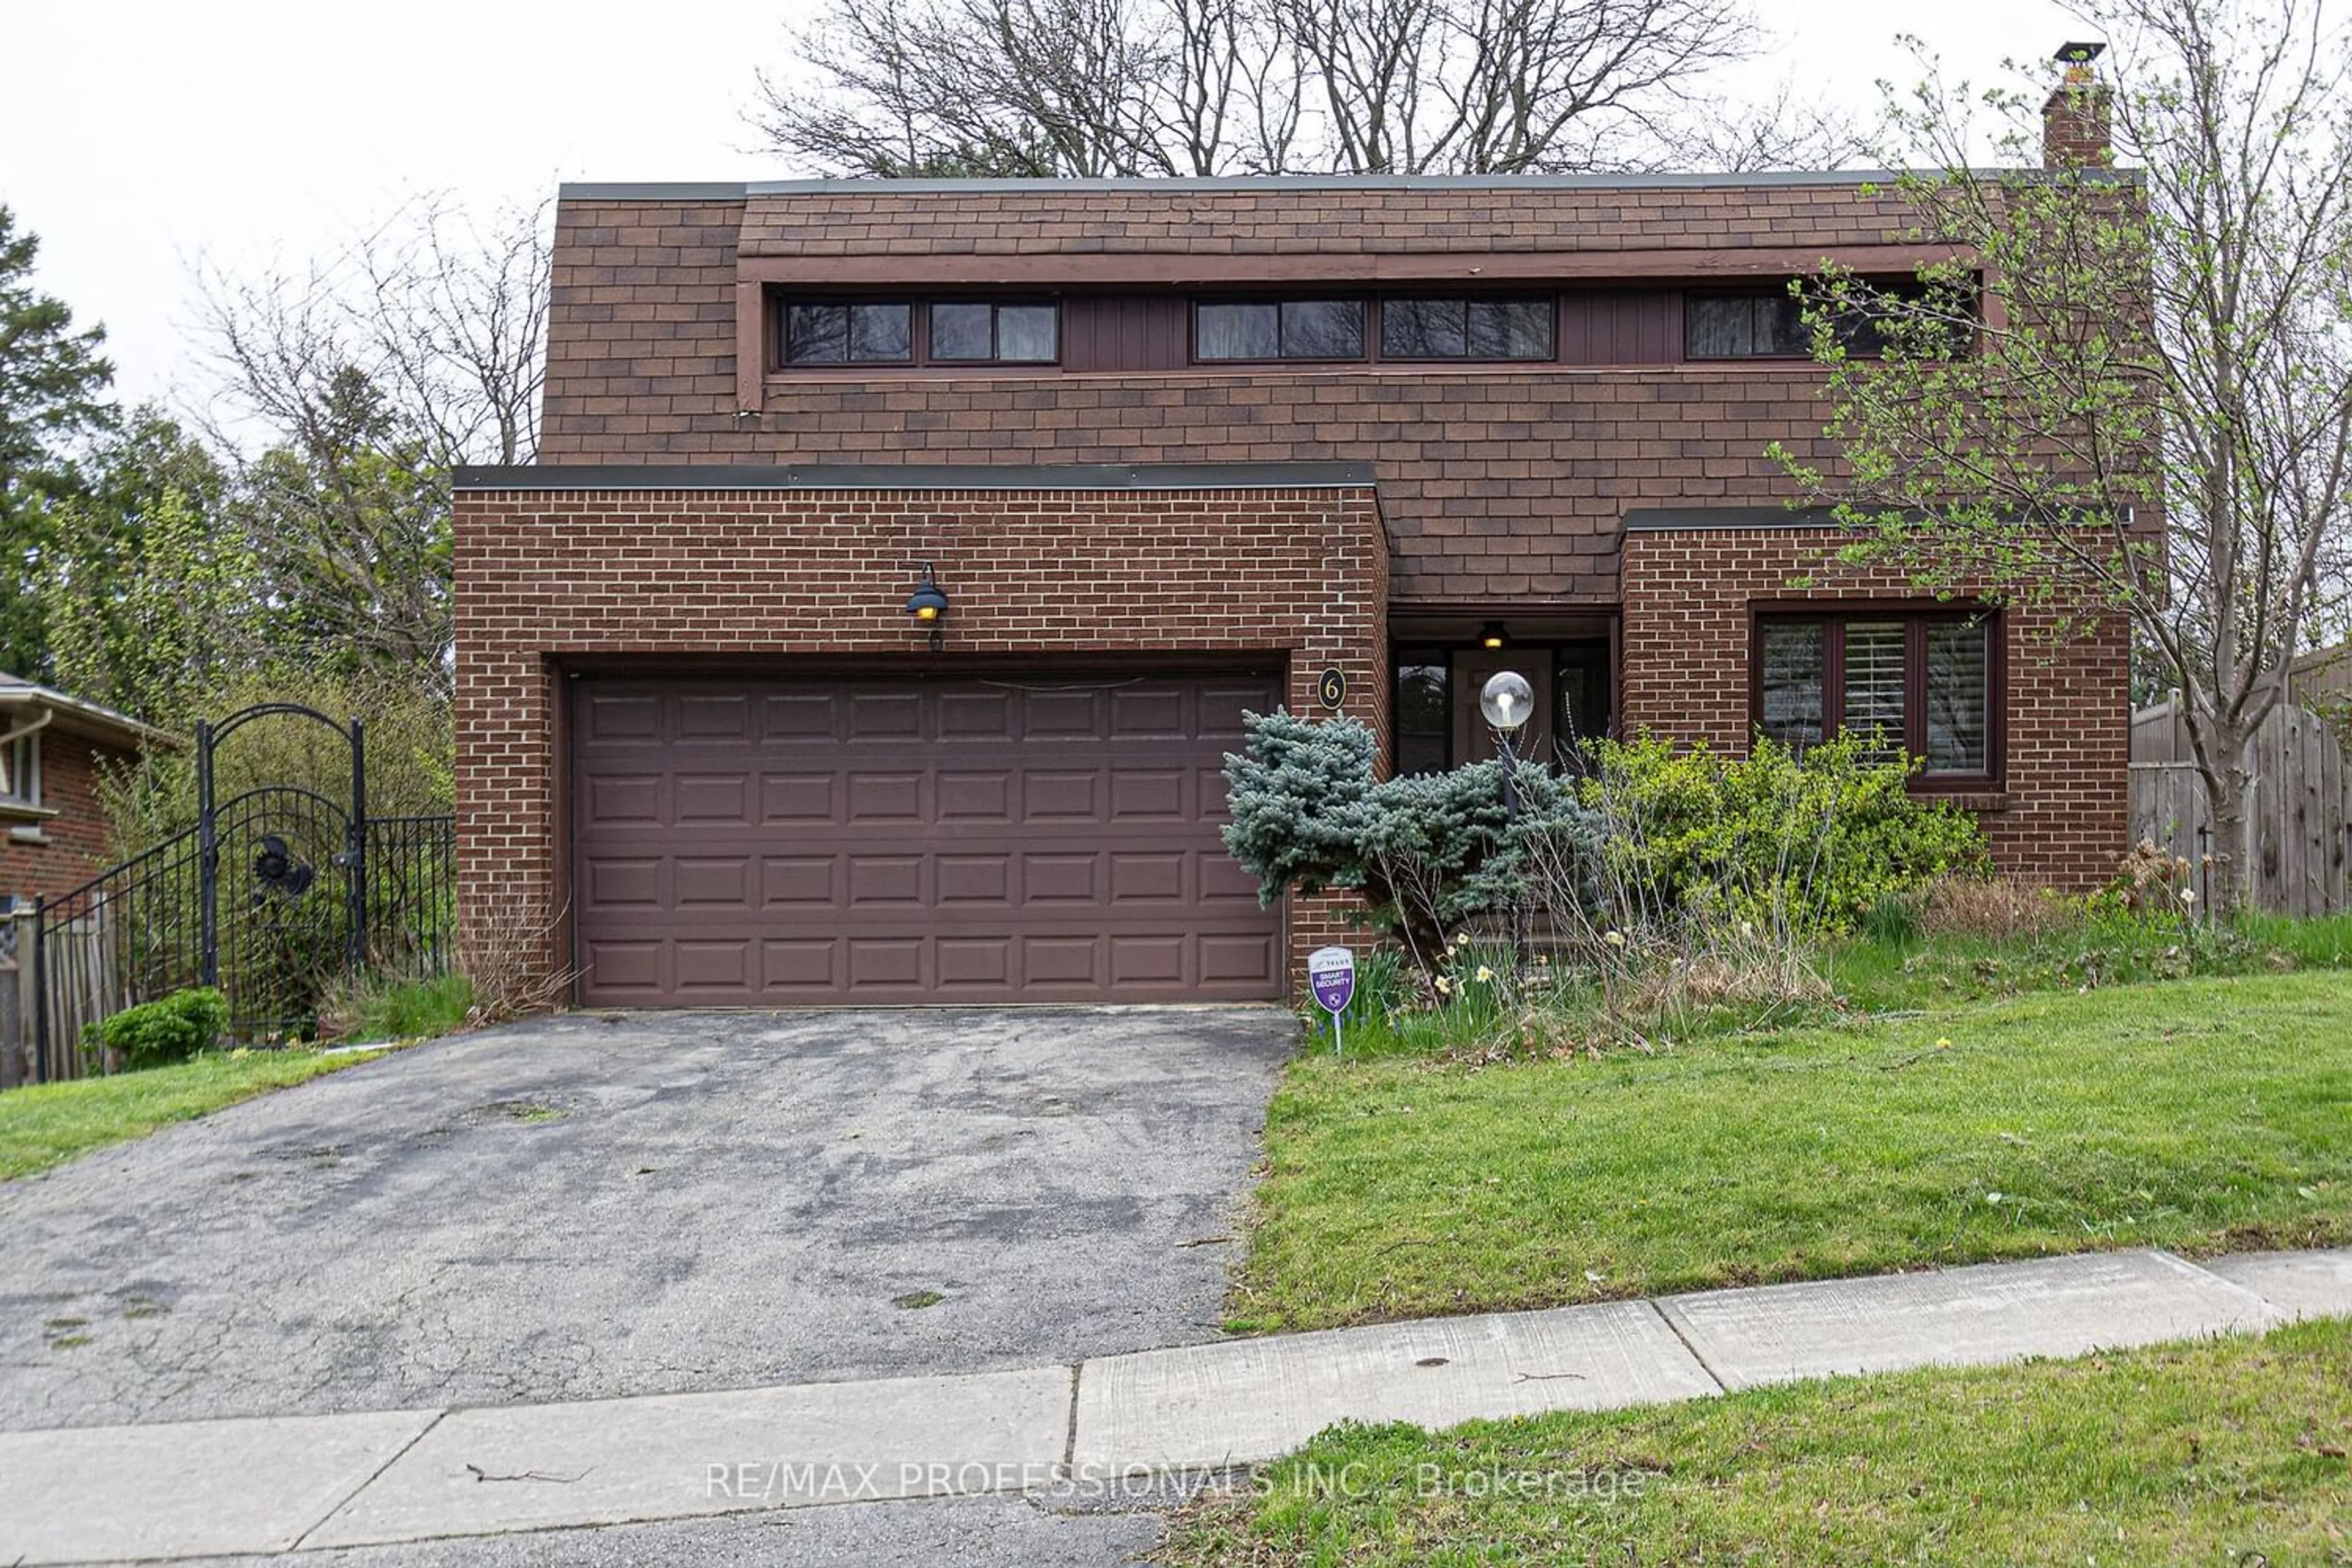 Home with brick exterior material for 6 Mogul Dr, Toronto Ontario M2H 2M7